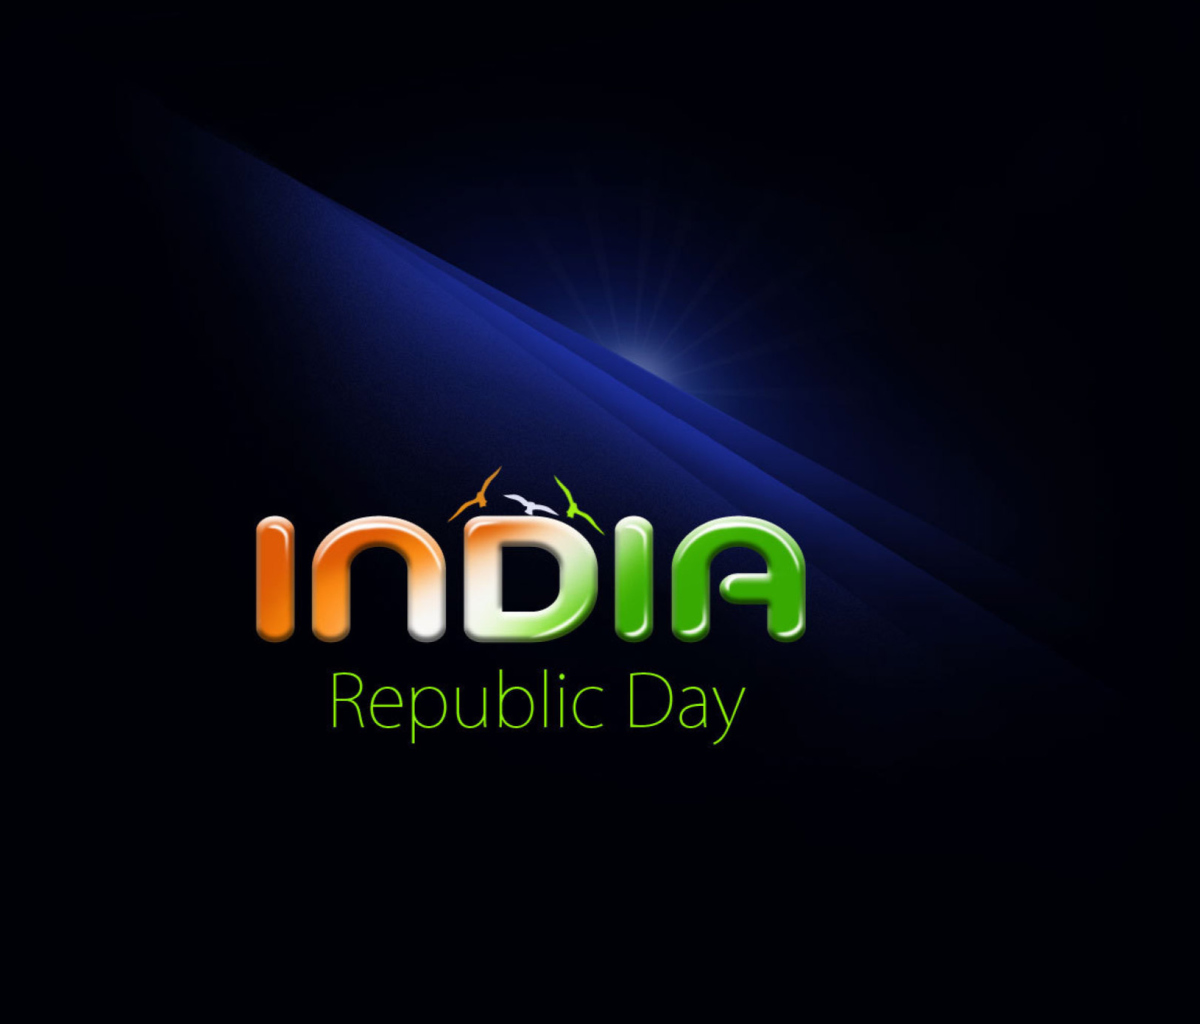 Sfondi Republic Day India 26 January 1200x1024